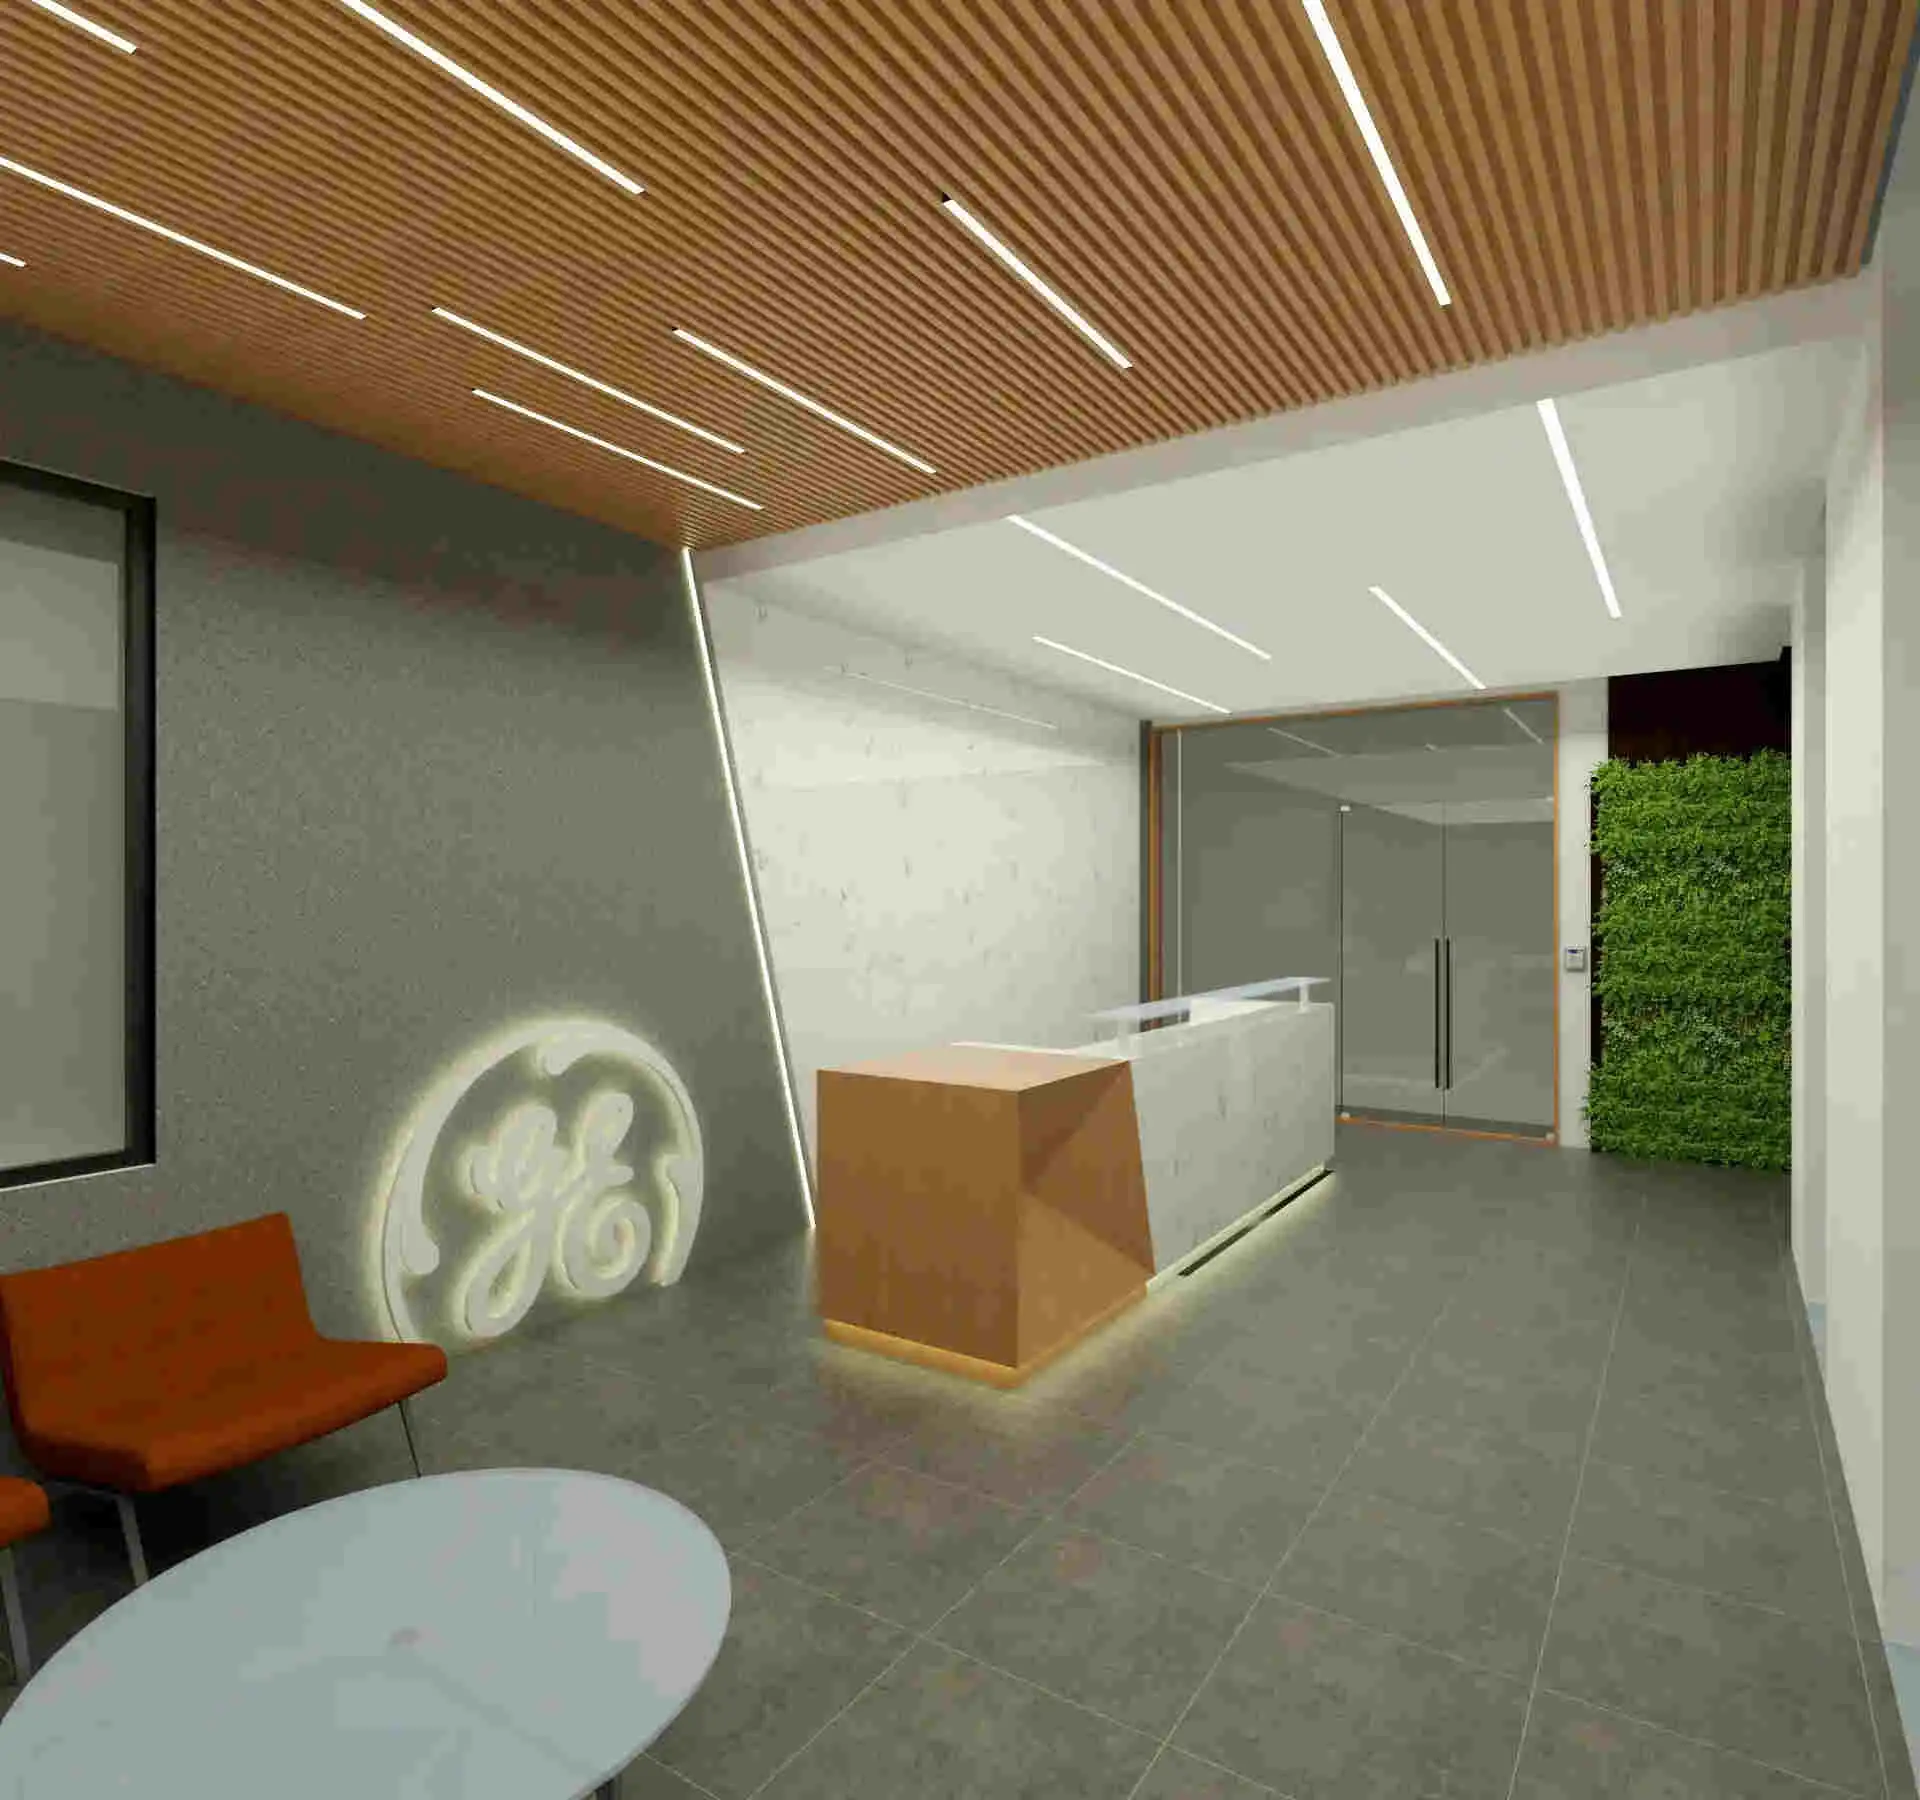 Office False Ceiling Design Idea